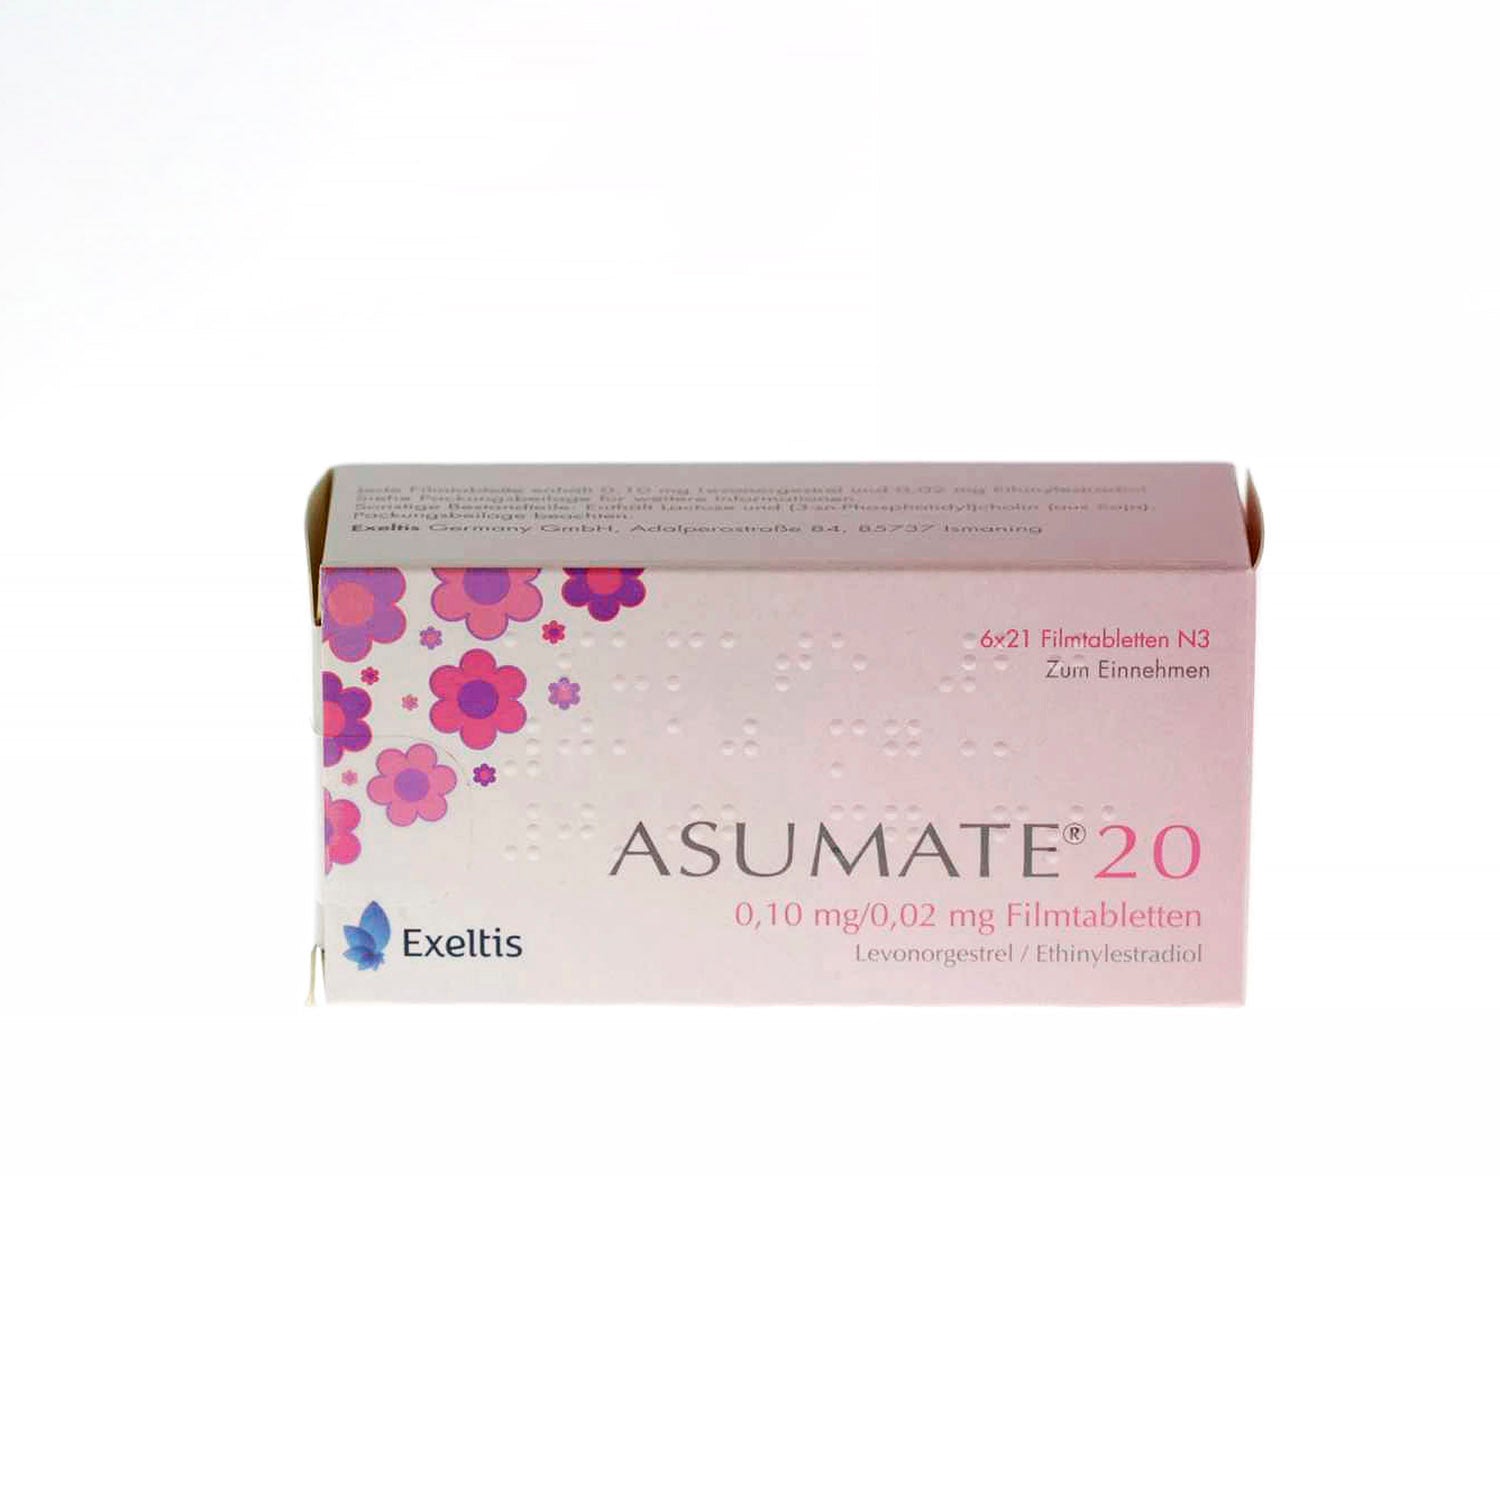 Asumate 20 0.10mg/0.02mg